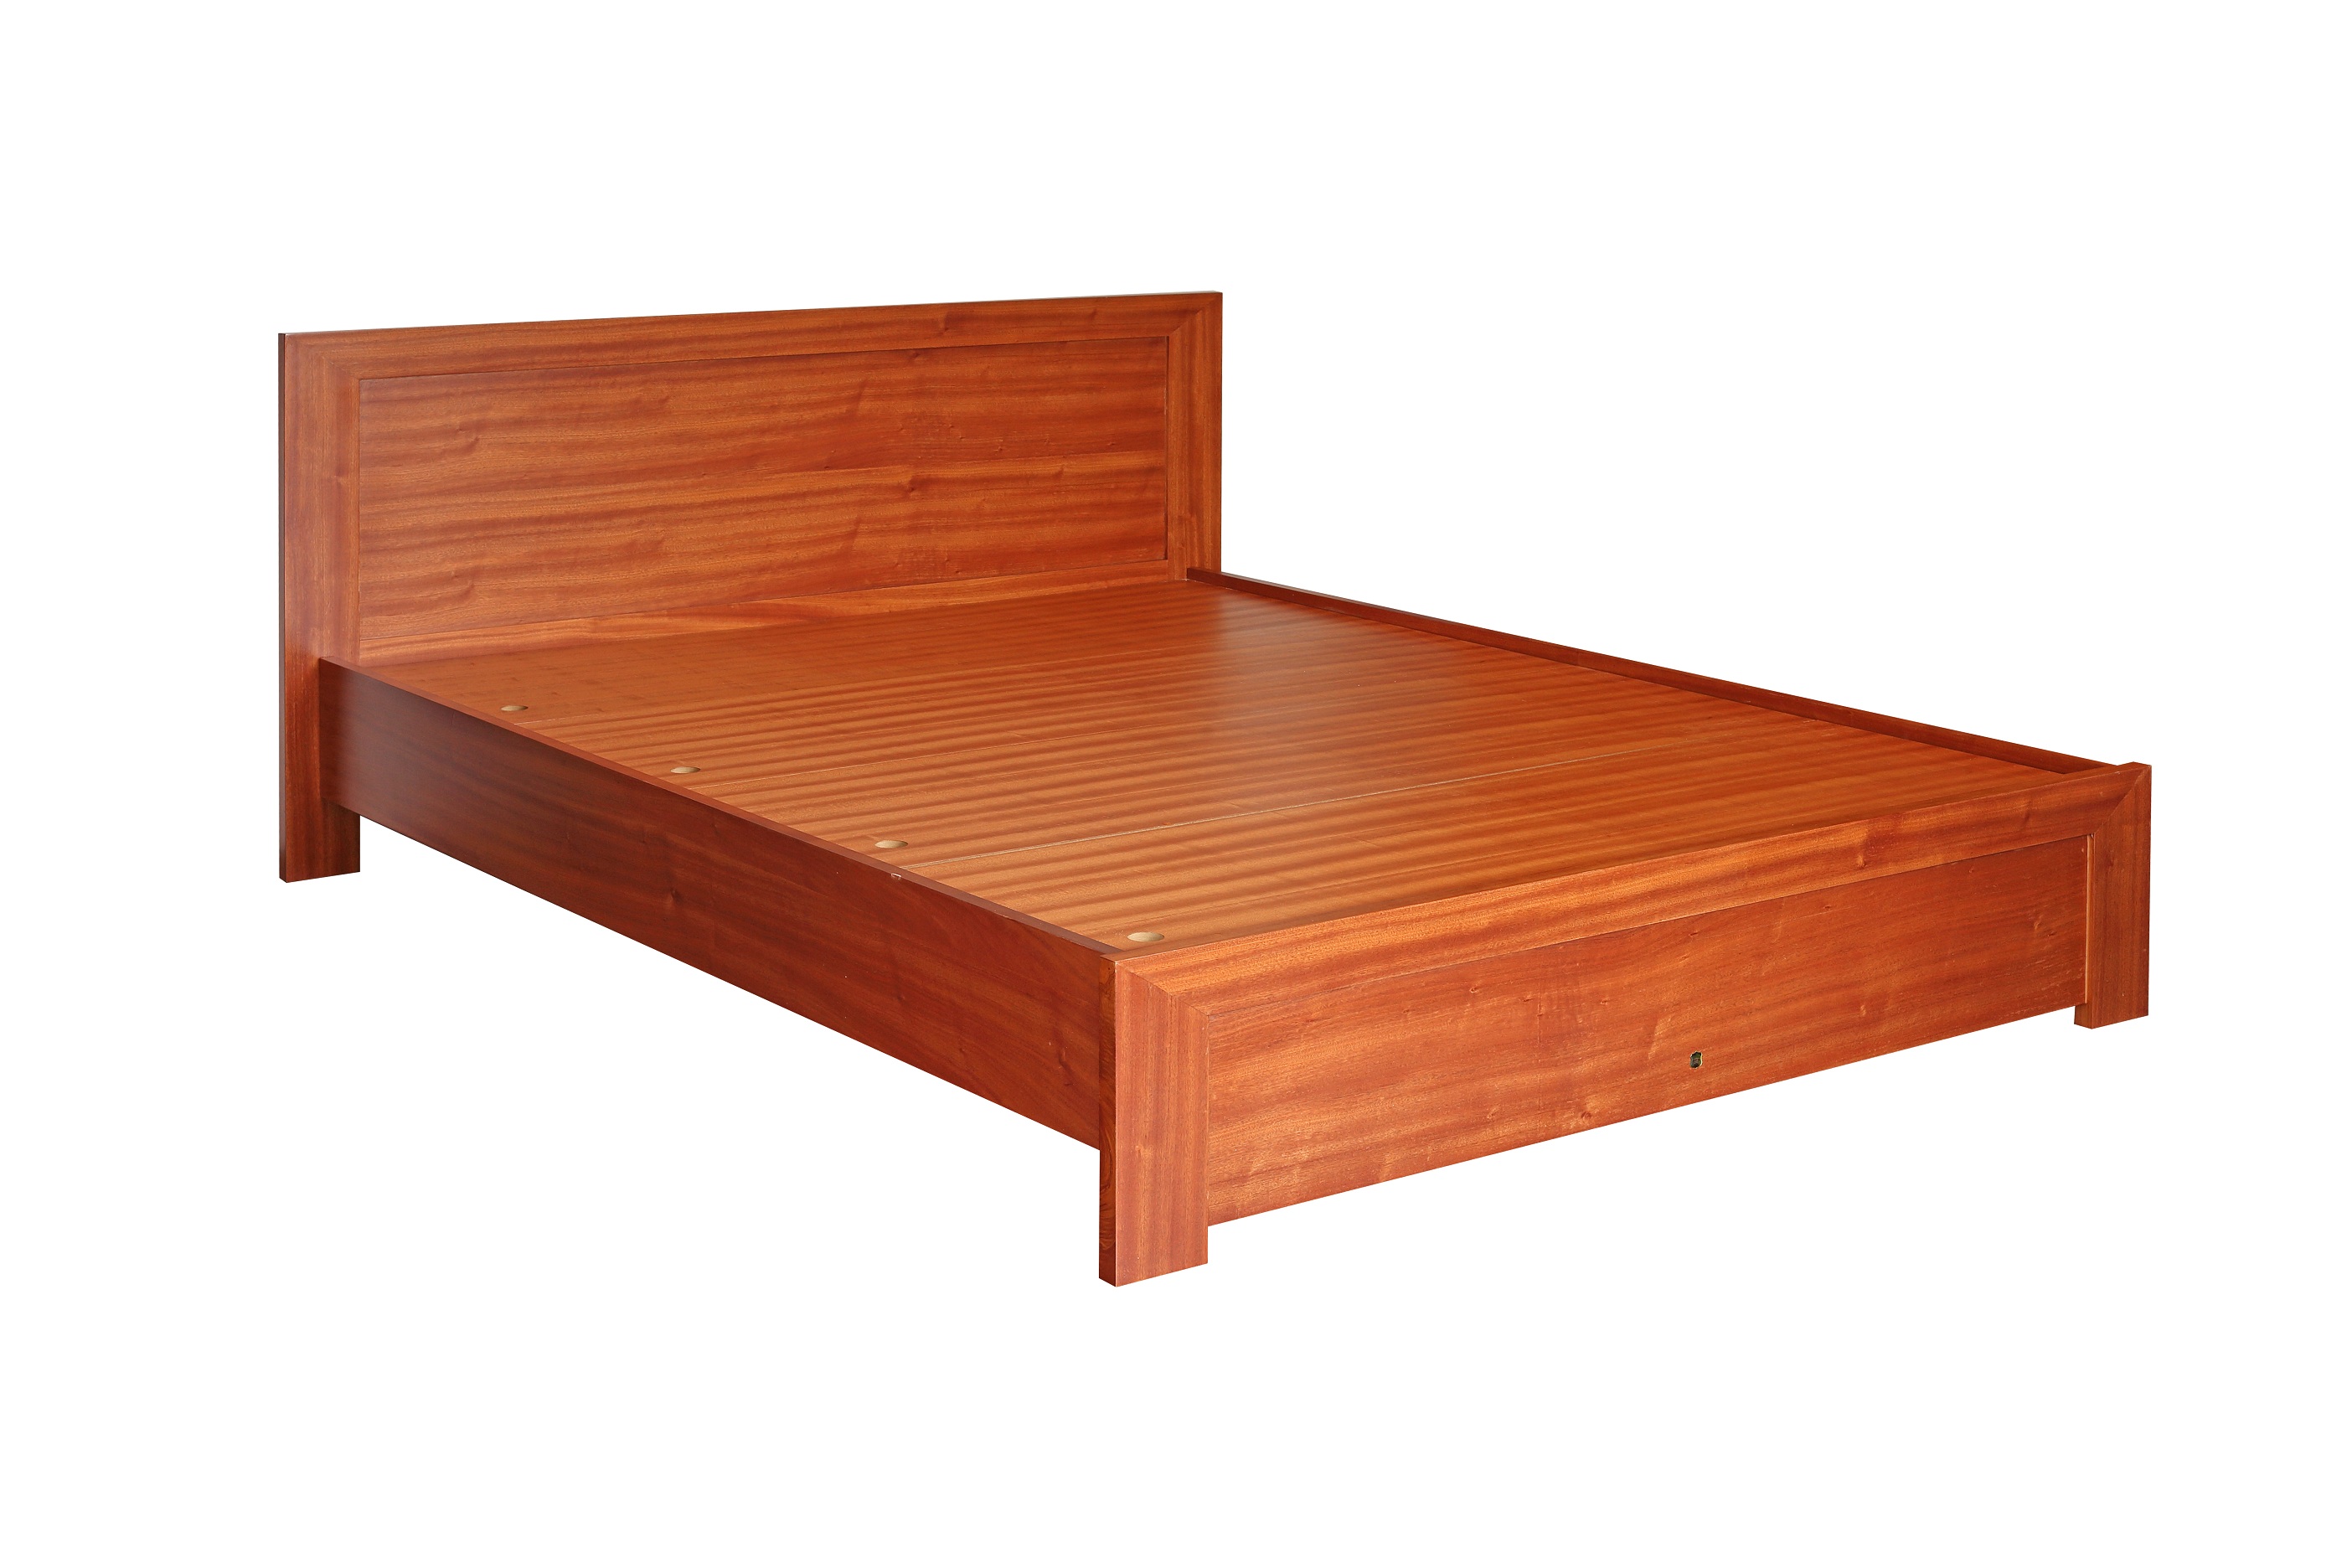 Biến phòng ngủ của bạn với giường gỗ tự nhiên, tăng cường cảm giác gia đình ấm cúng và trang nhã. Hãy xem hình ảnh để lựa chọn mẫu giường phù hợp với không gian và yêu cầu của bạn.